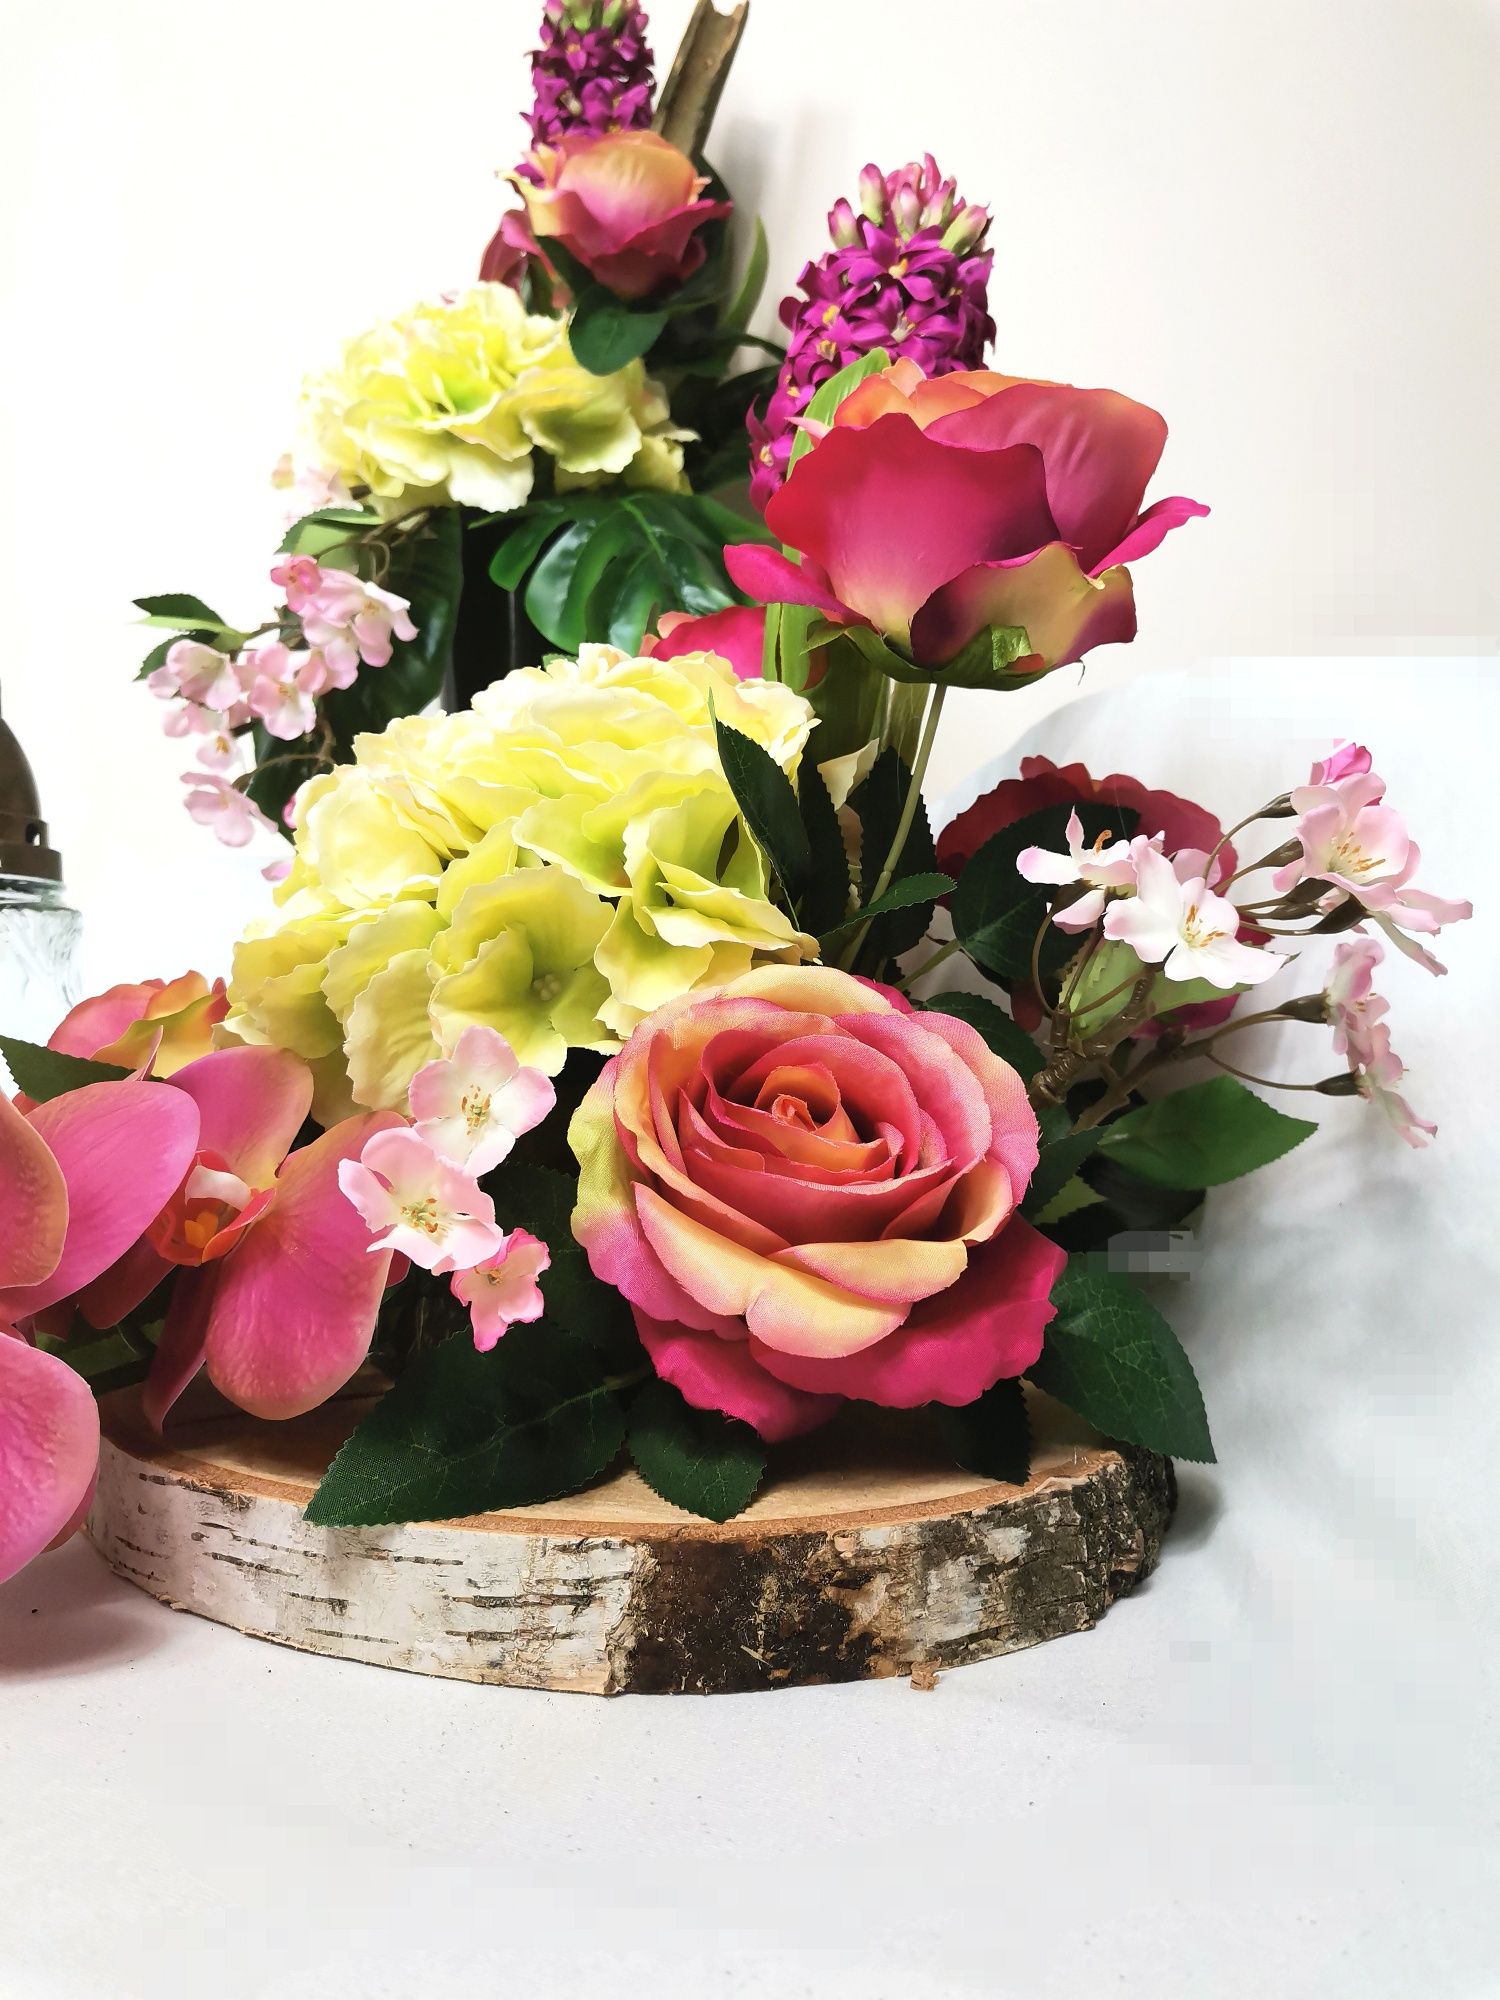 Komplet Viva Magenta sztuczne kwiaty kompozycja+wazon+wianek pod znicz